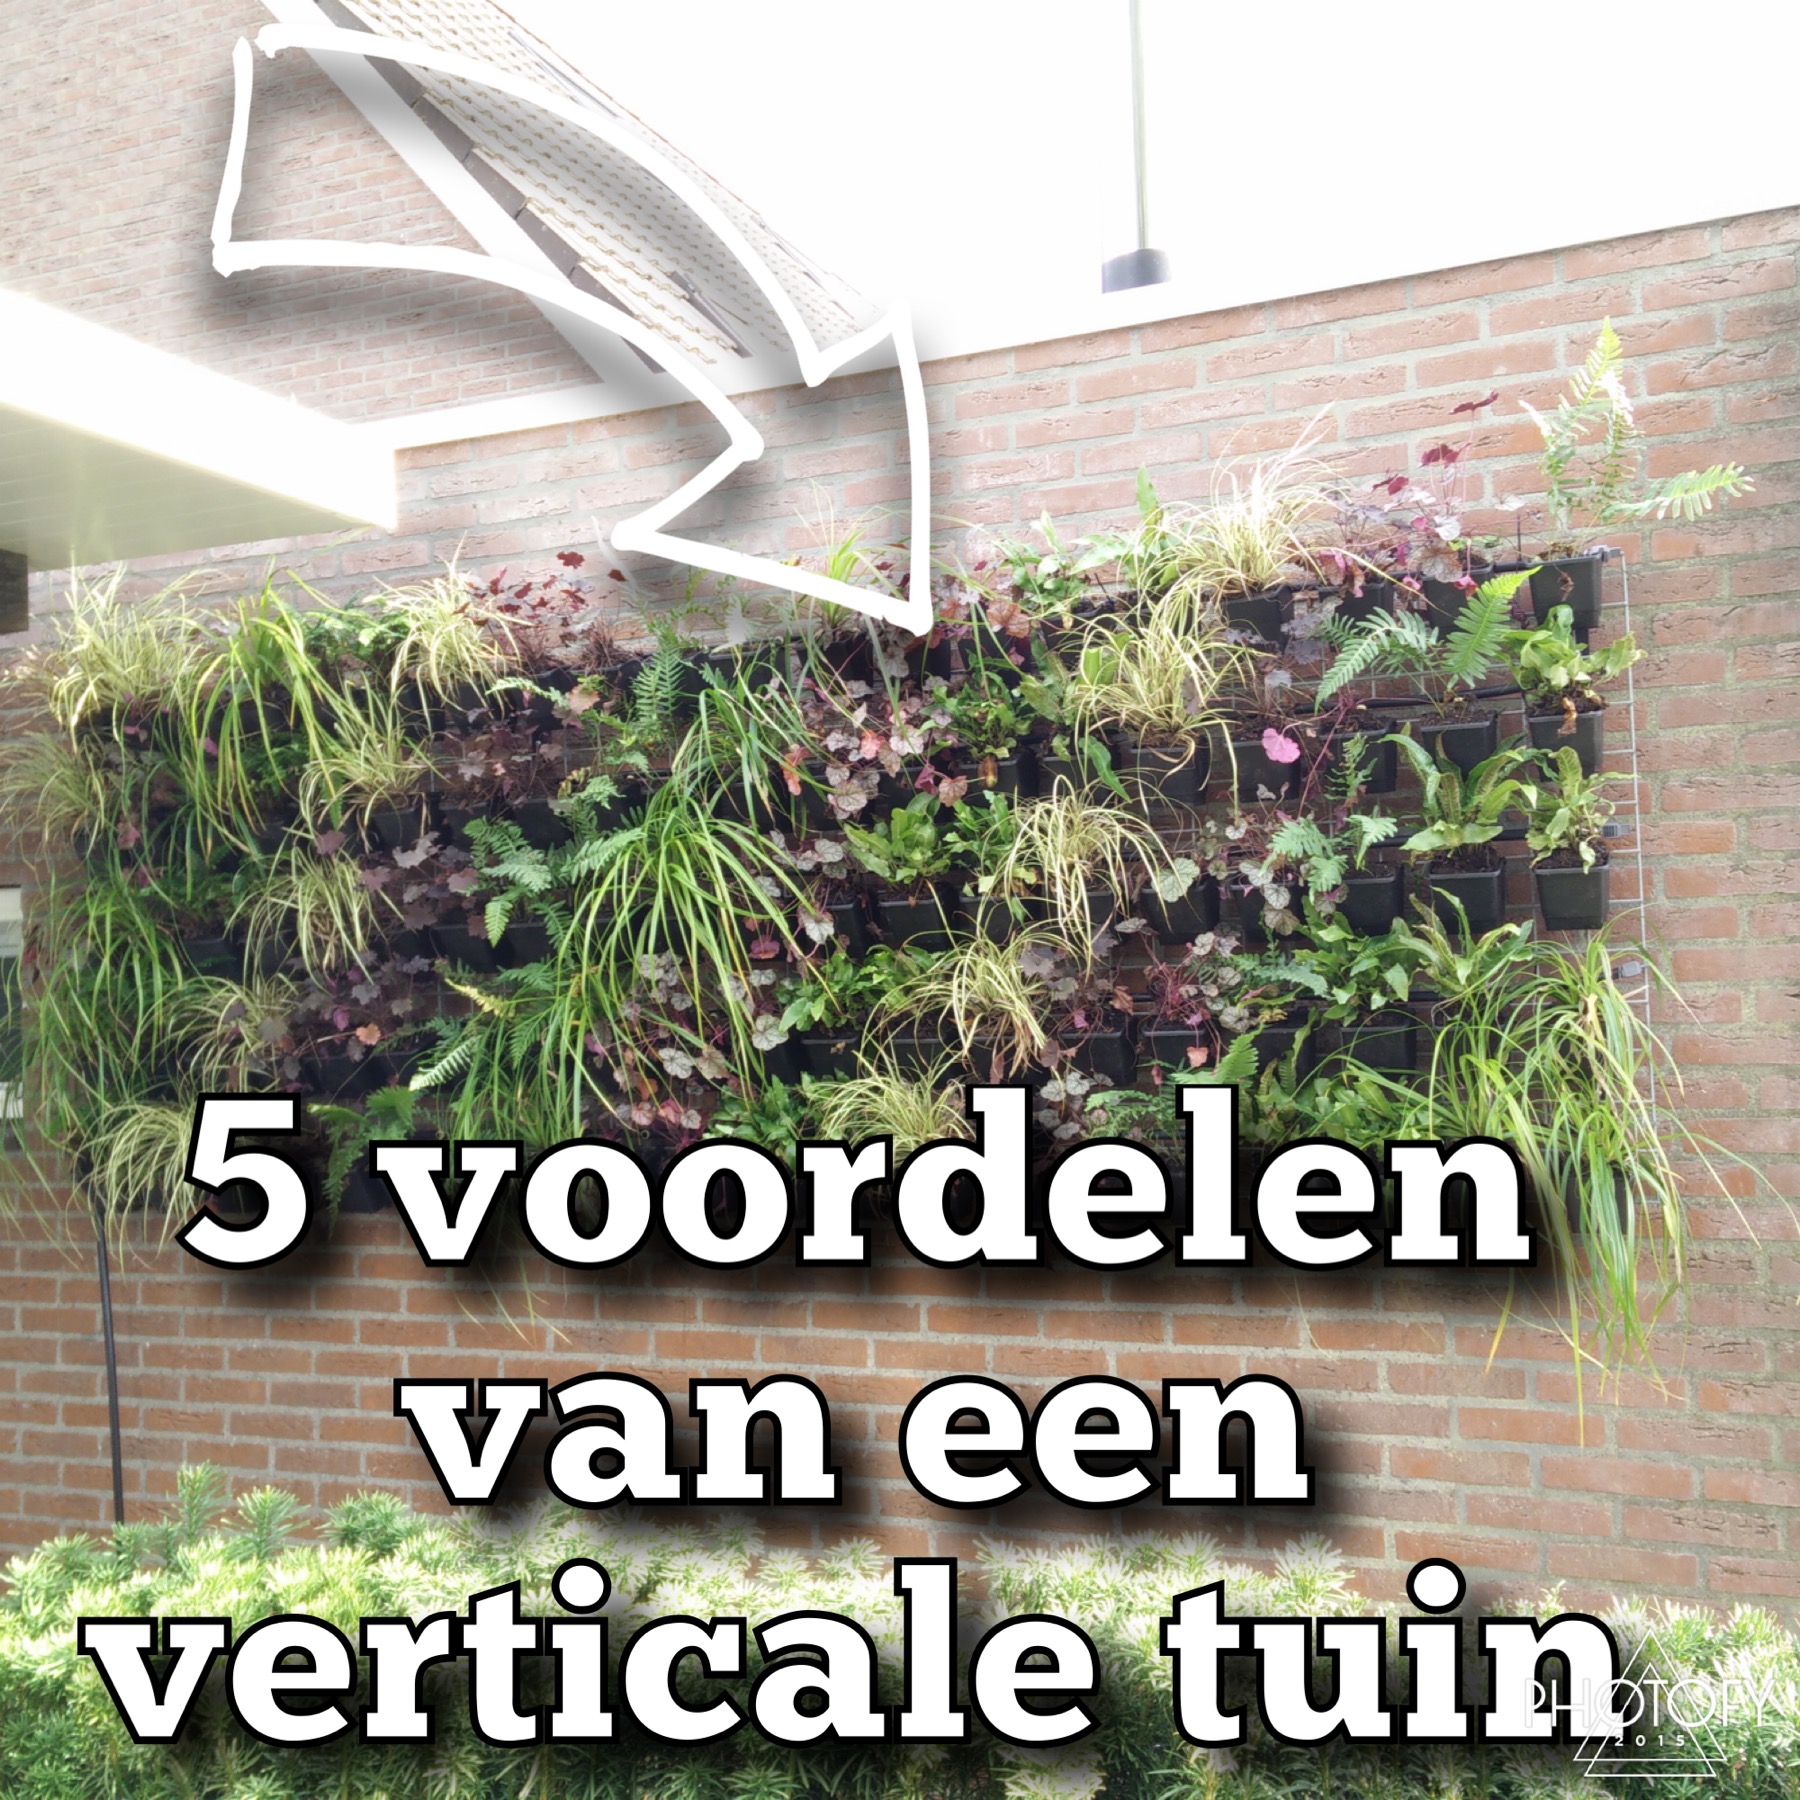 5 voordelen verticale tuin